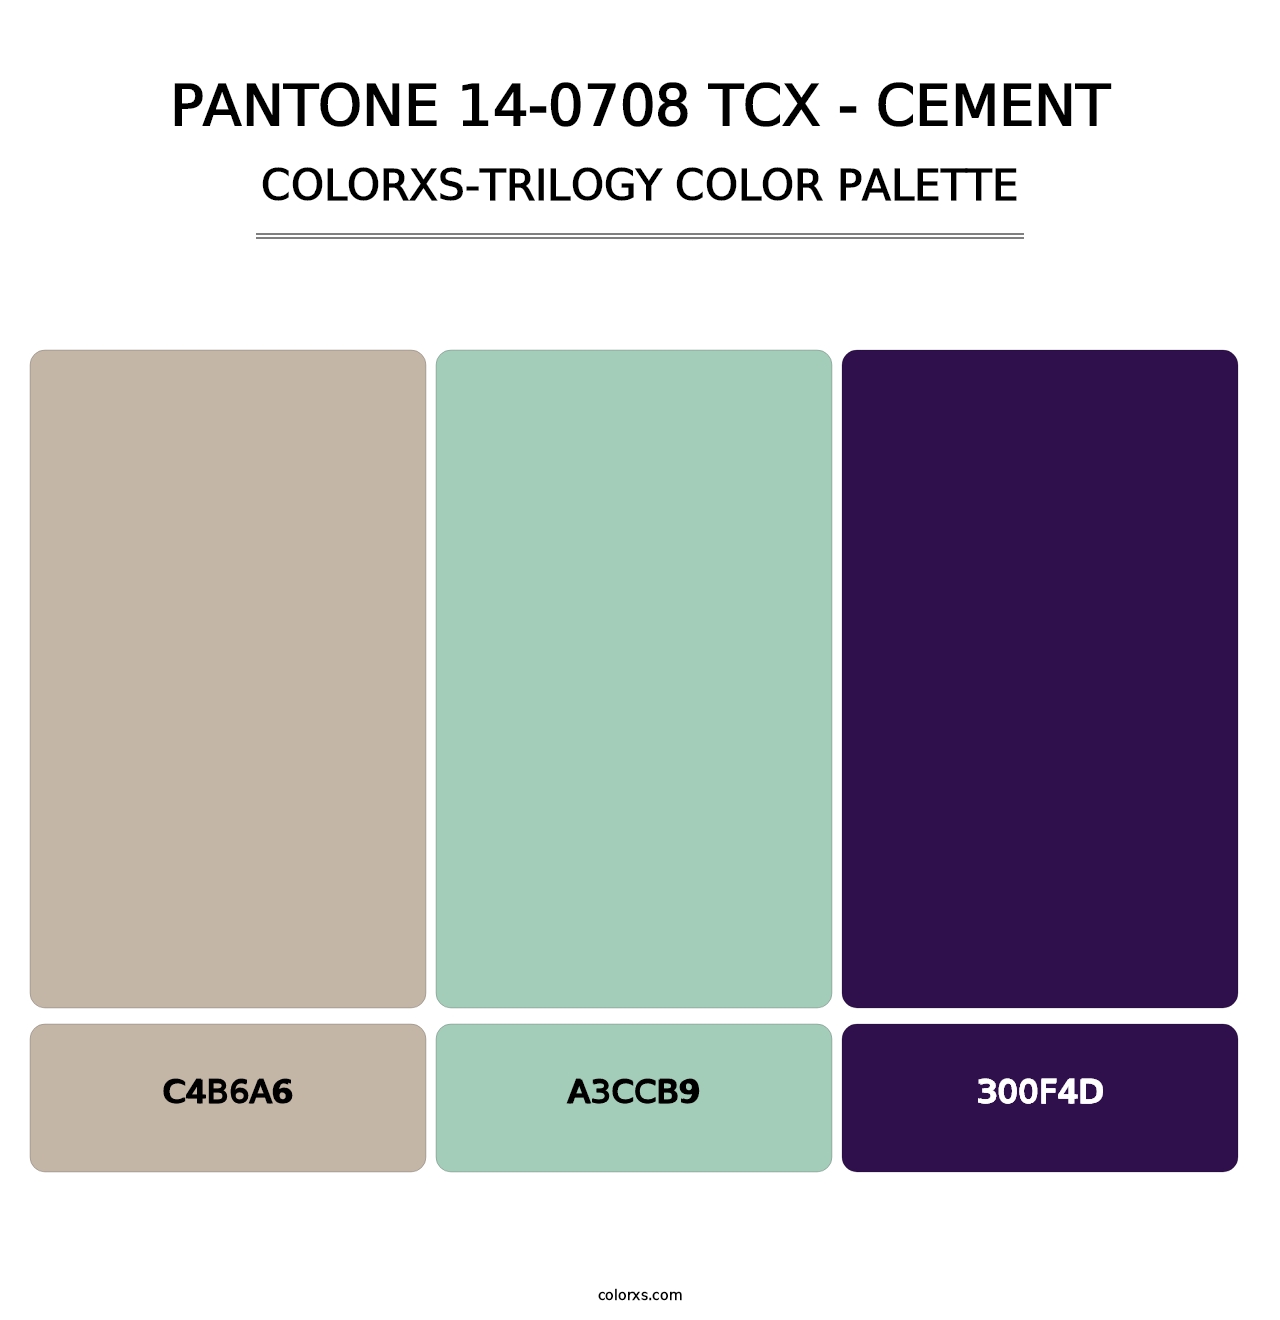 PANTONE 14-0708 TCX - Cement - Colorxs Trilogy Palette